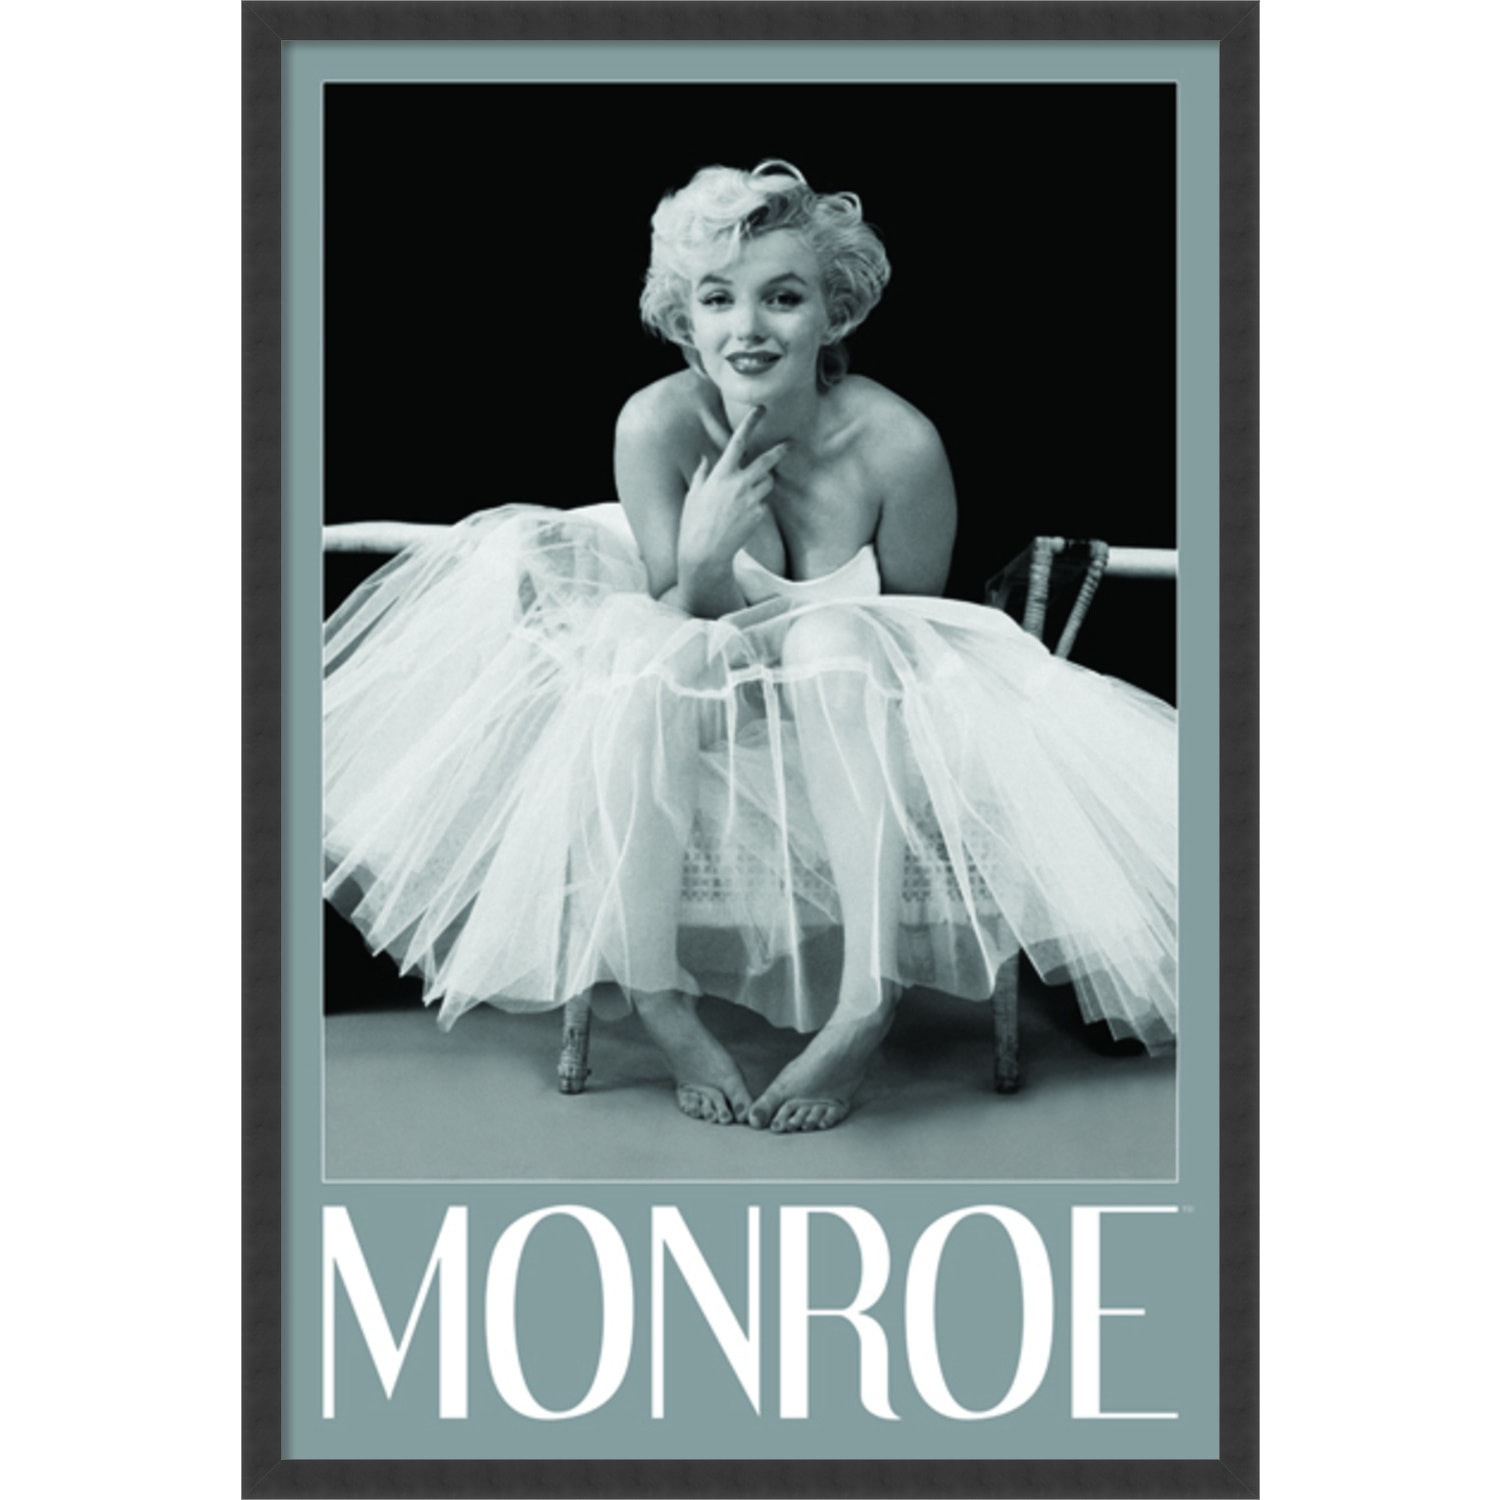 Marilyn Monroe - Chanel No. 5 24x24 Framed Art Print by Feingersh, Ed